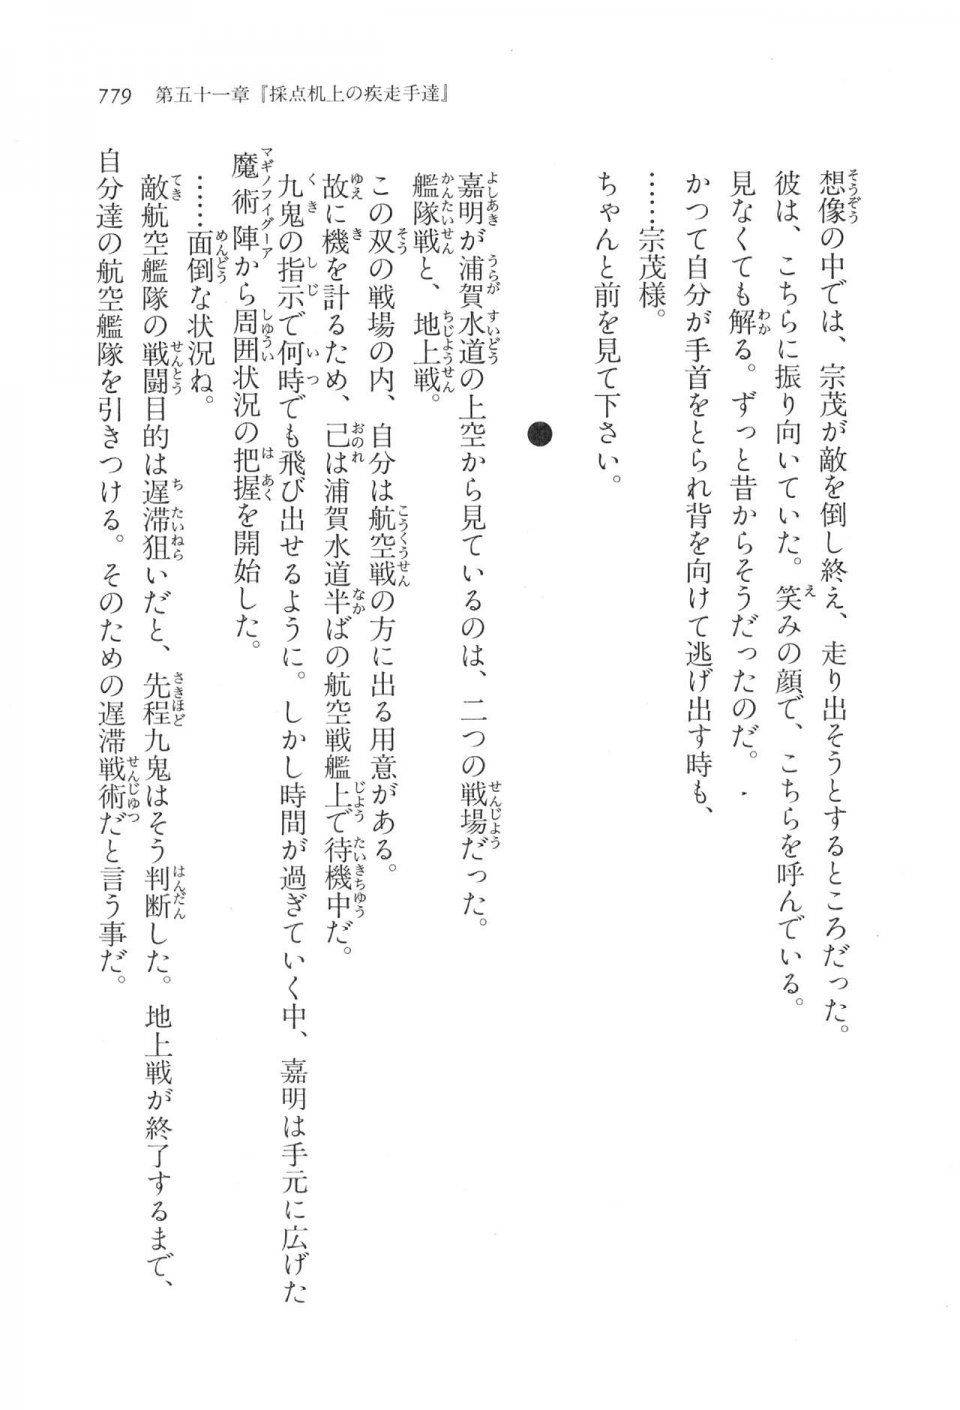 Kyoukai Senjou no Horizon LN Vol 17(7B) - Photo #781